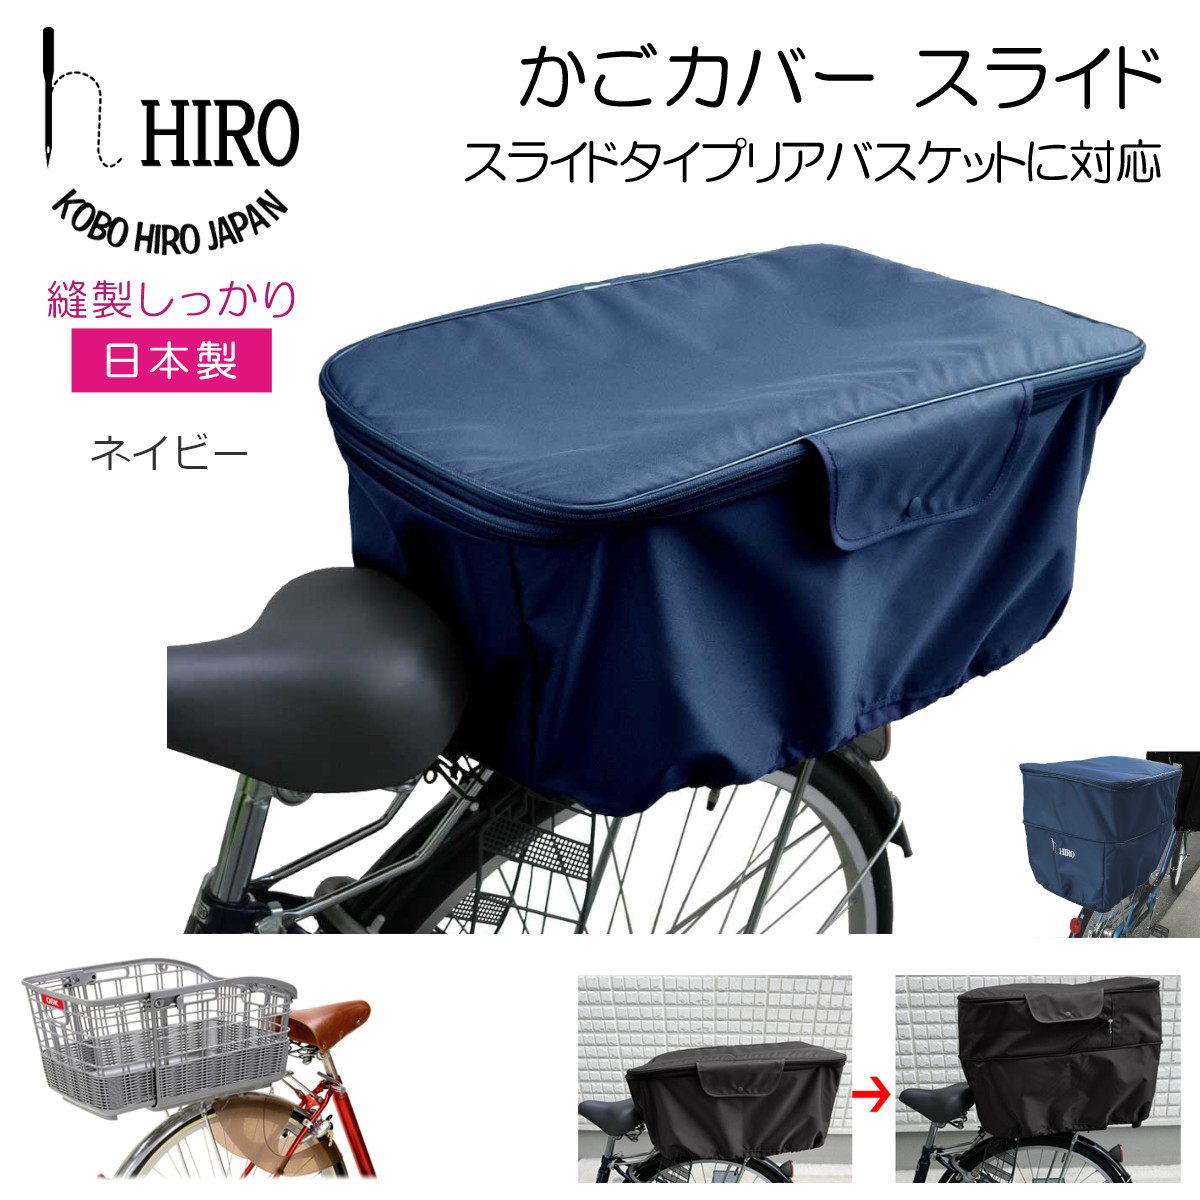 【楽天市場】自転車 後ろ用 スライド かごカバー HIRO 日本製 